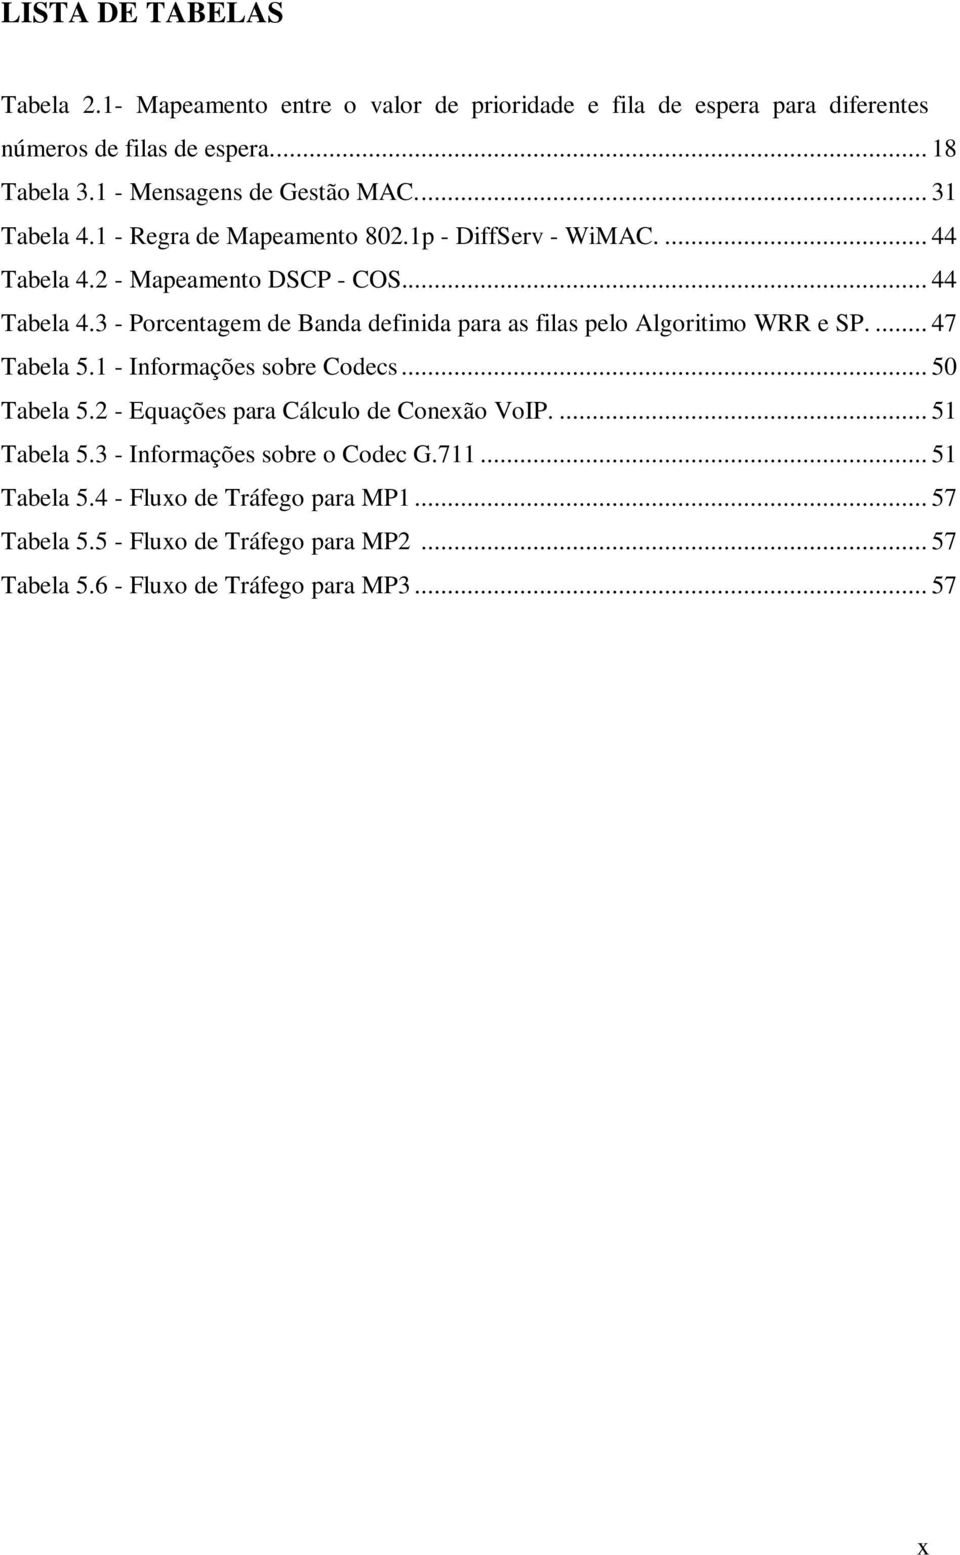 2 - Mapeamento DSCP - COS... 44 Tabela 4.3 - Porcentagem de Banda definida para as filas pelo Algoritimo WRR e SP.... 47 Tabela 5.1 - Informações sobre Codecs.